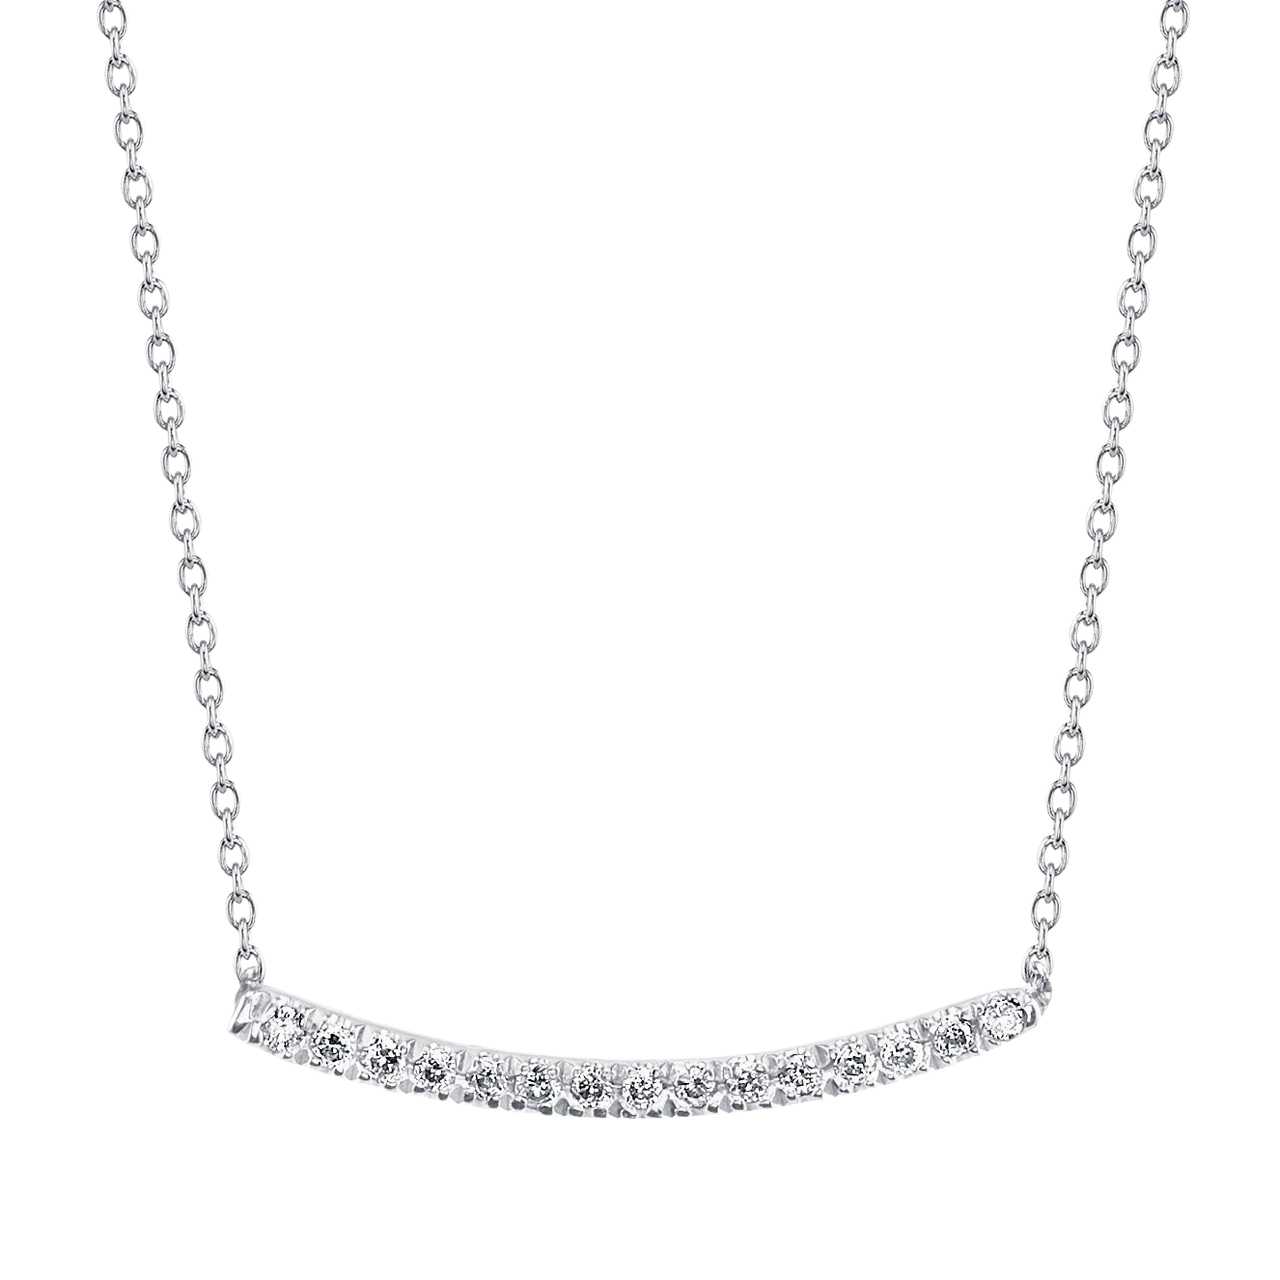 Axis Necklace with White Pavé Diamonds - Gabriela Artigas